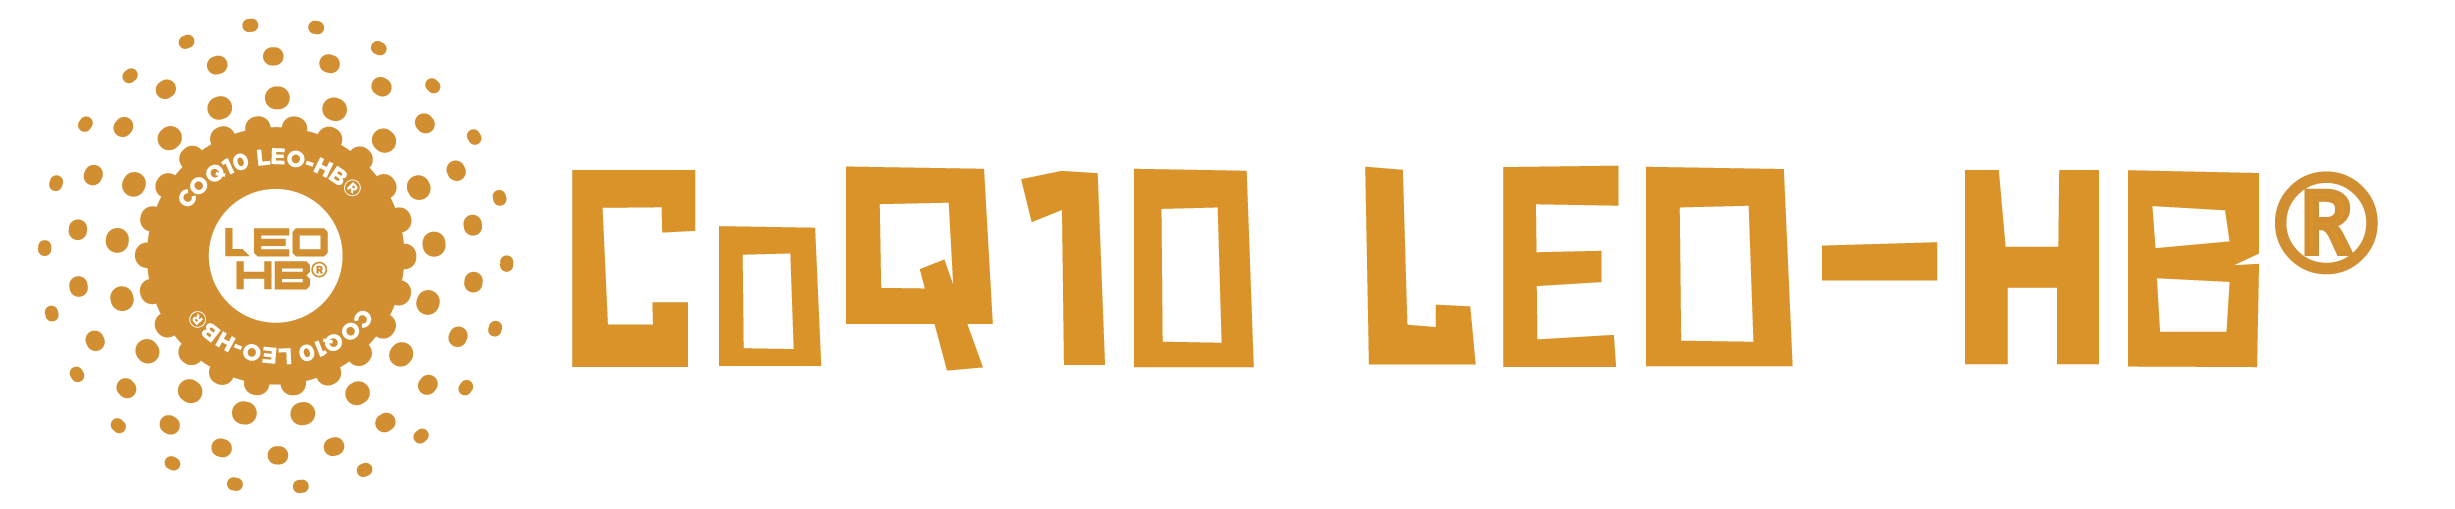 CoQ10 LEO-HB® LOGO